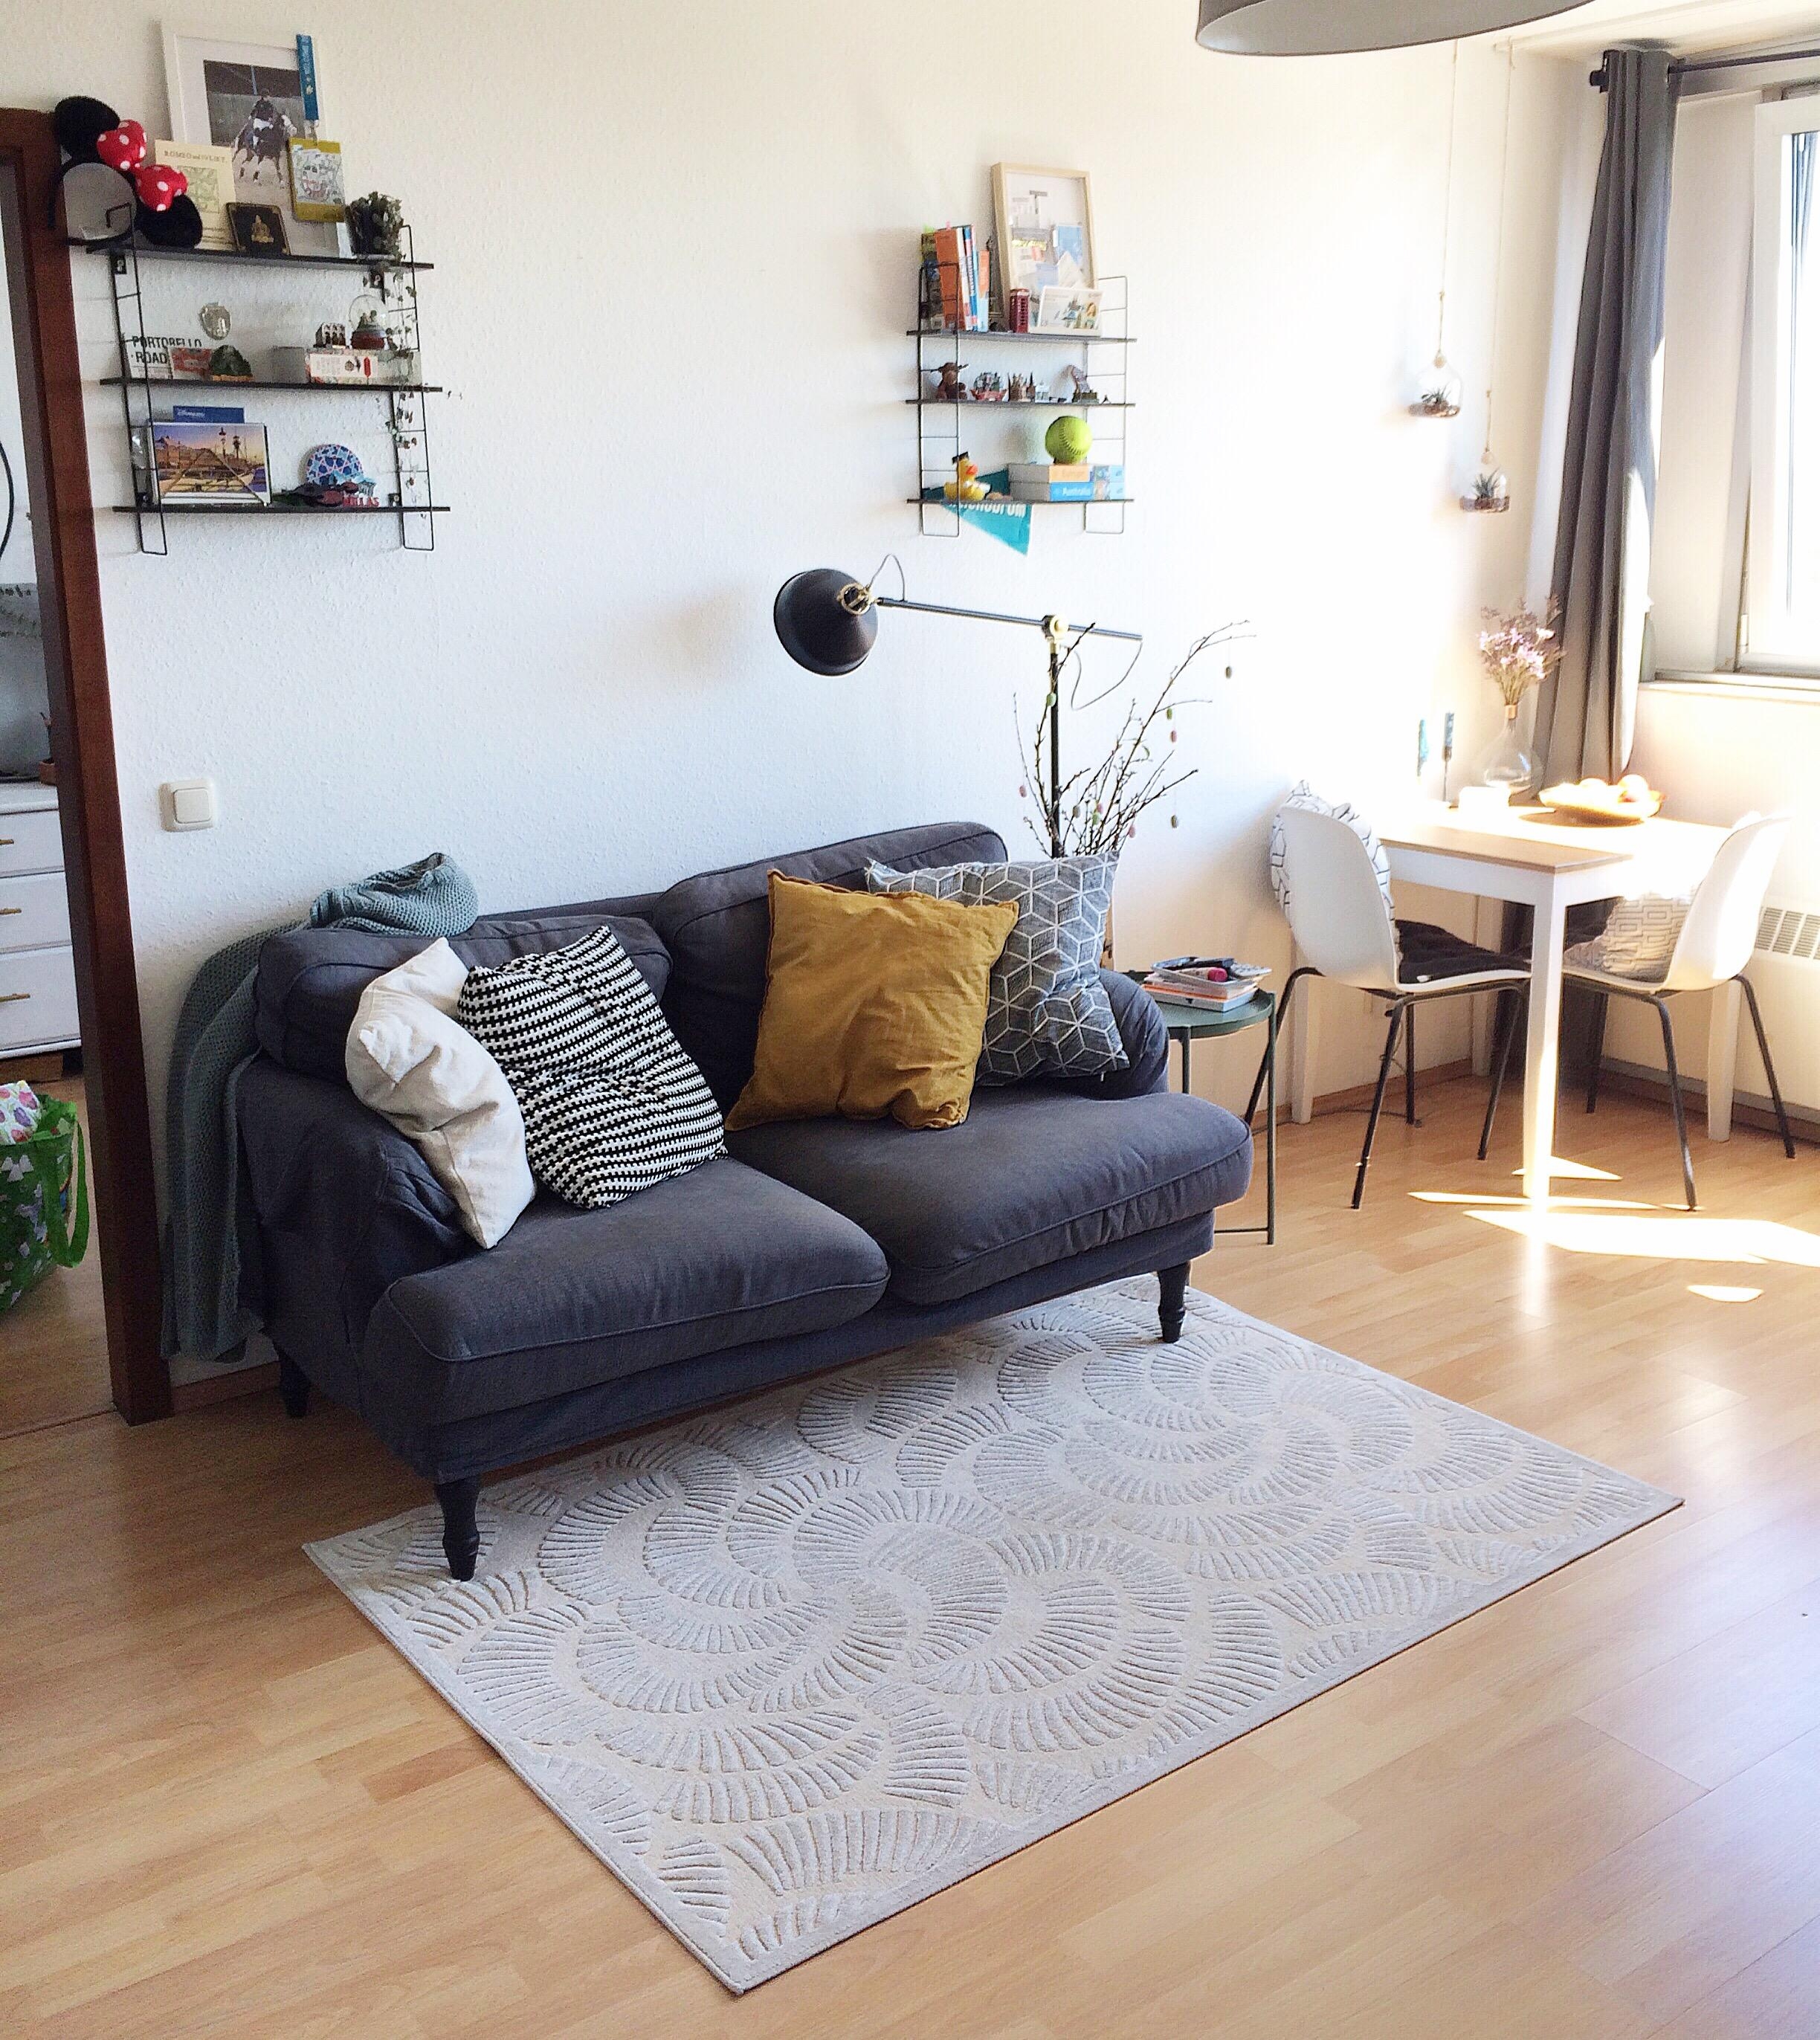 Endlich Sonne! #wohnzimmer #livingroom #farbtupfer #sofakissen